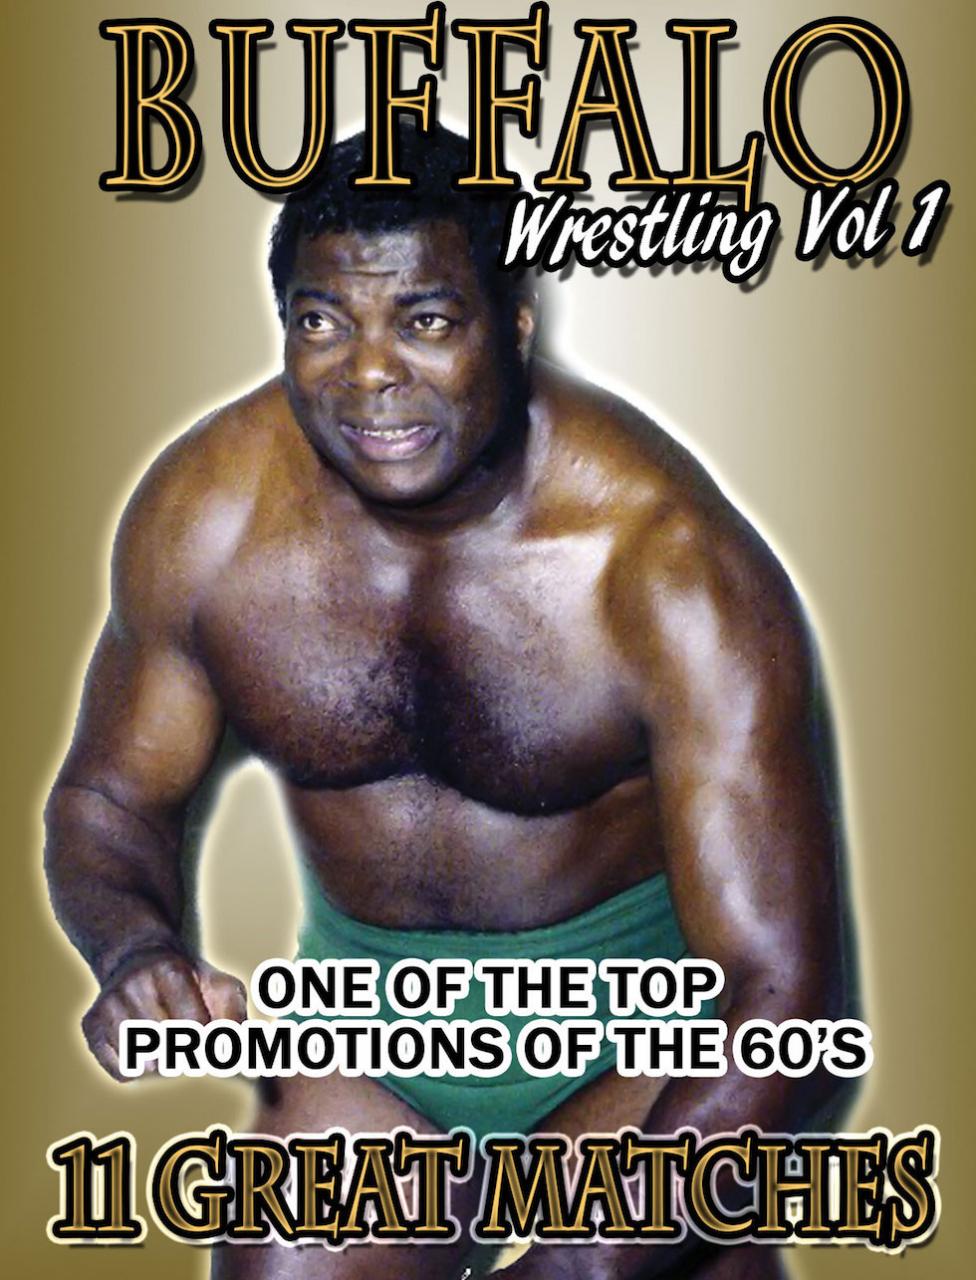 Best of Buffalo Wrestling Vol. 1